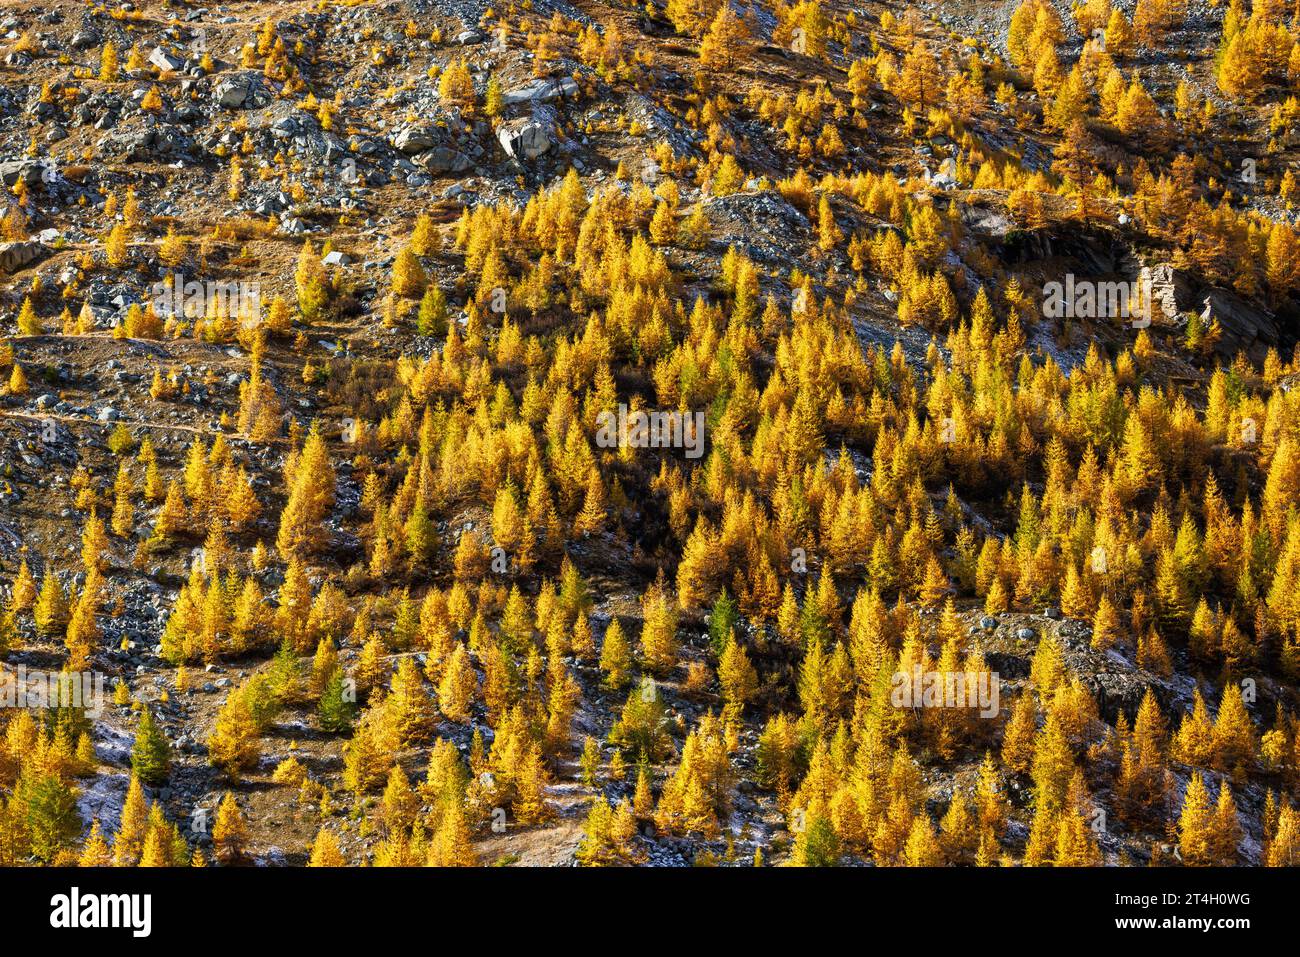 Wald von gelb gefärbten europäischen Lärchen (Larix decidua) und Mattmark Damm im Herbst in SaaS Almagell, Wallis Stockfoto